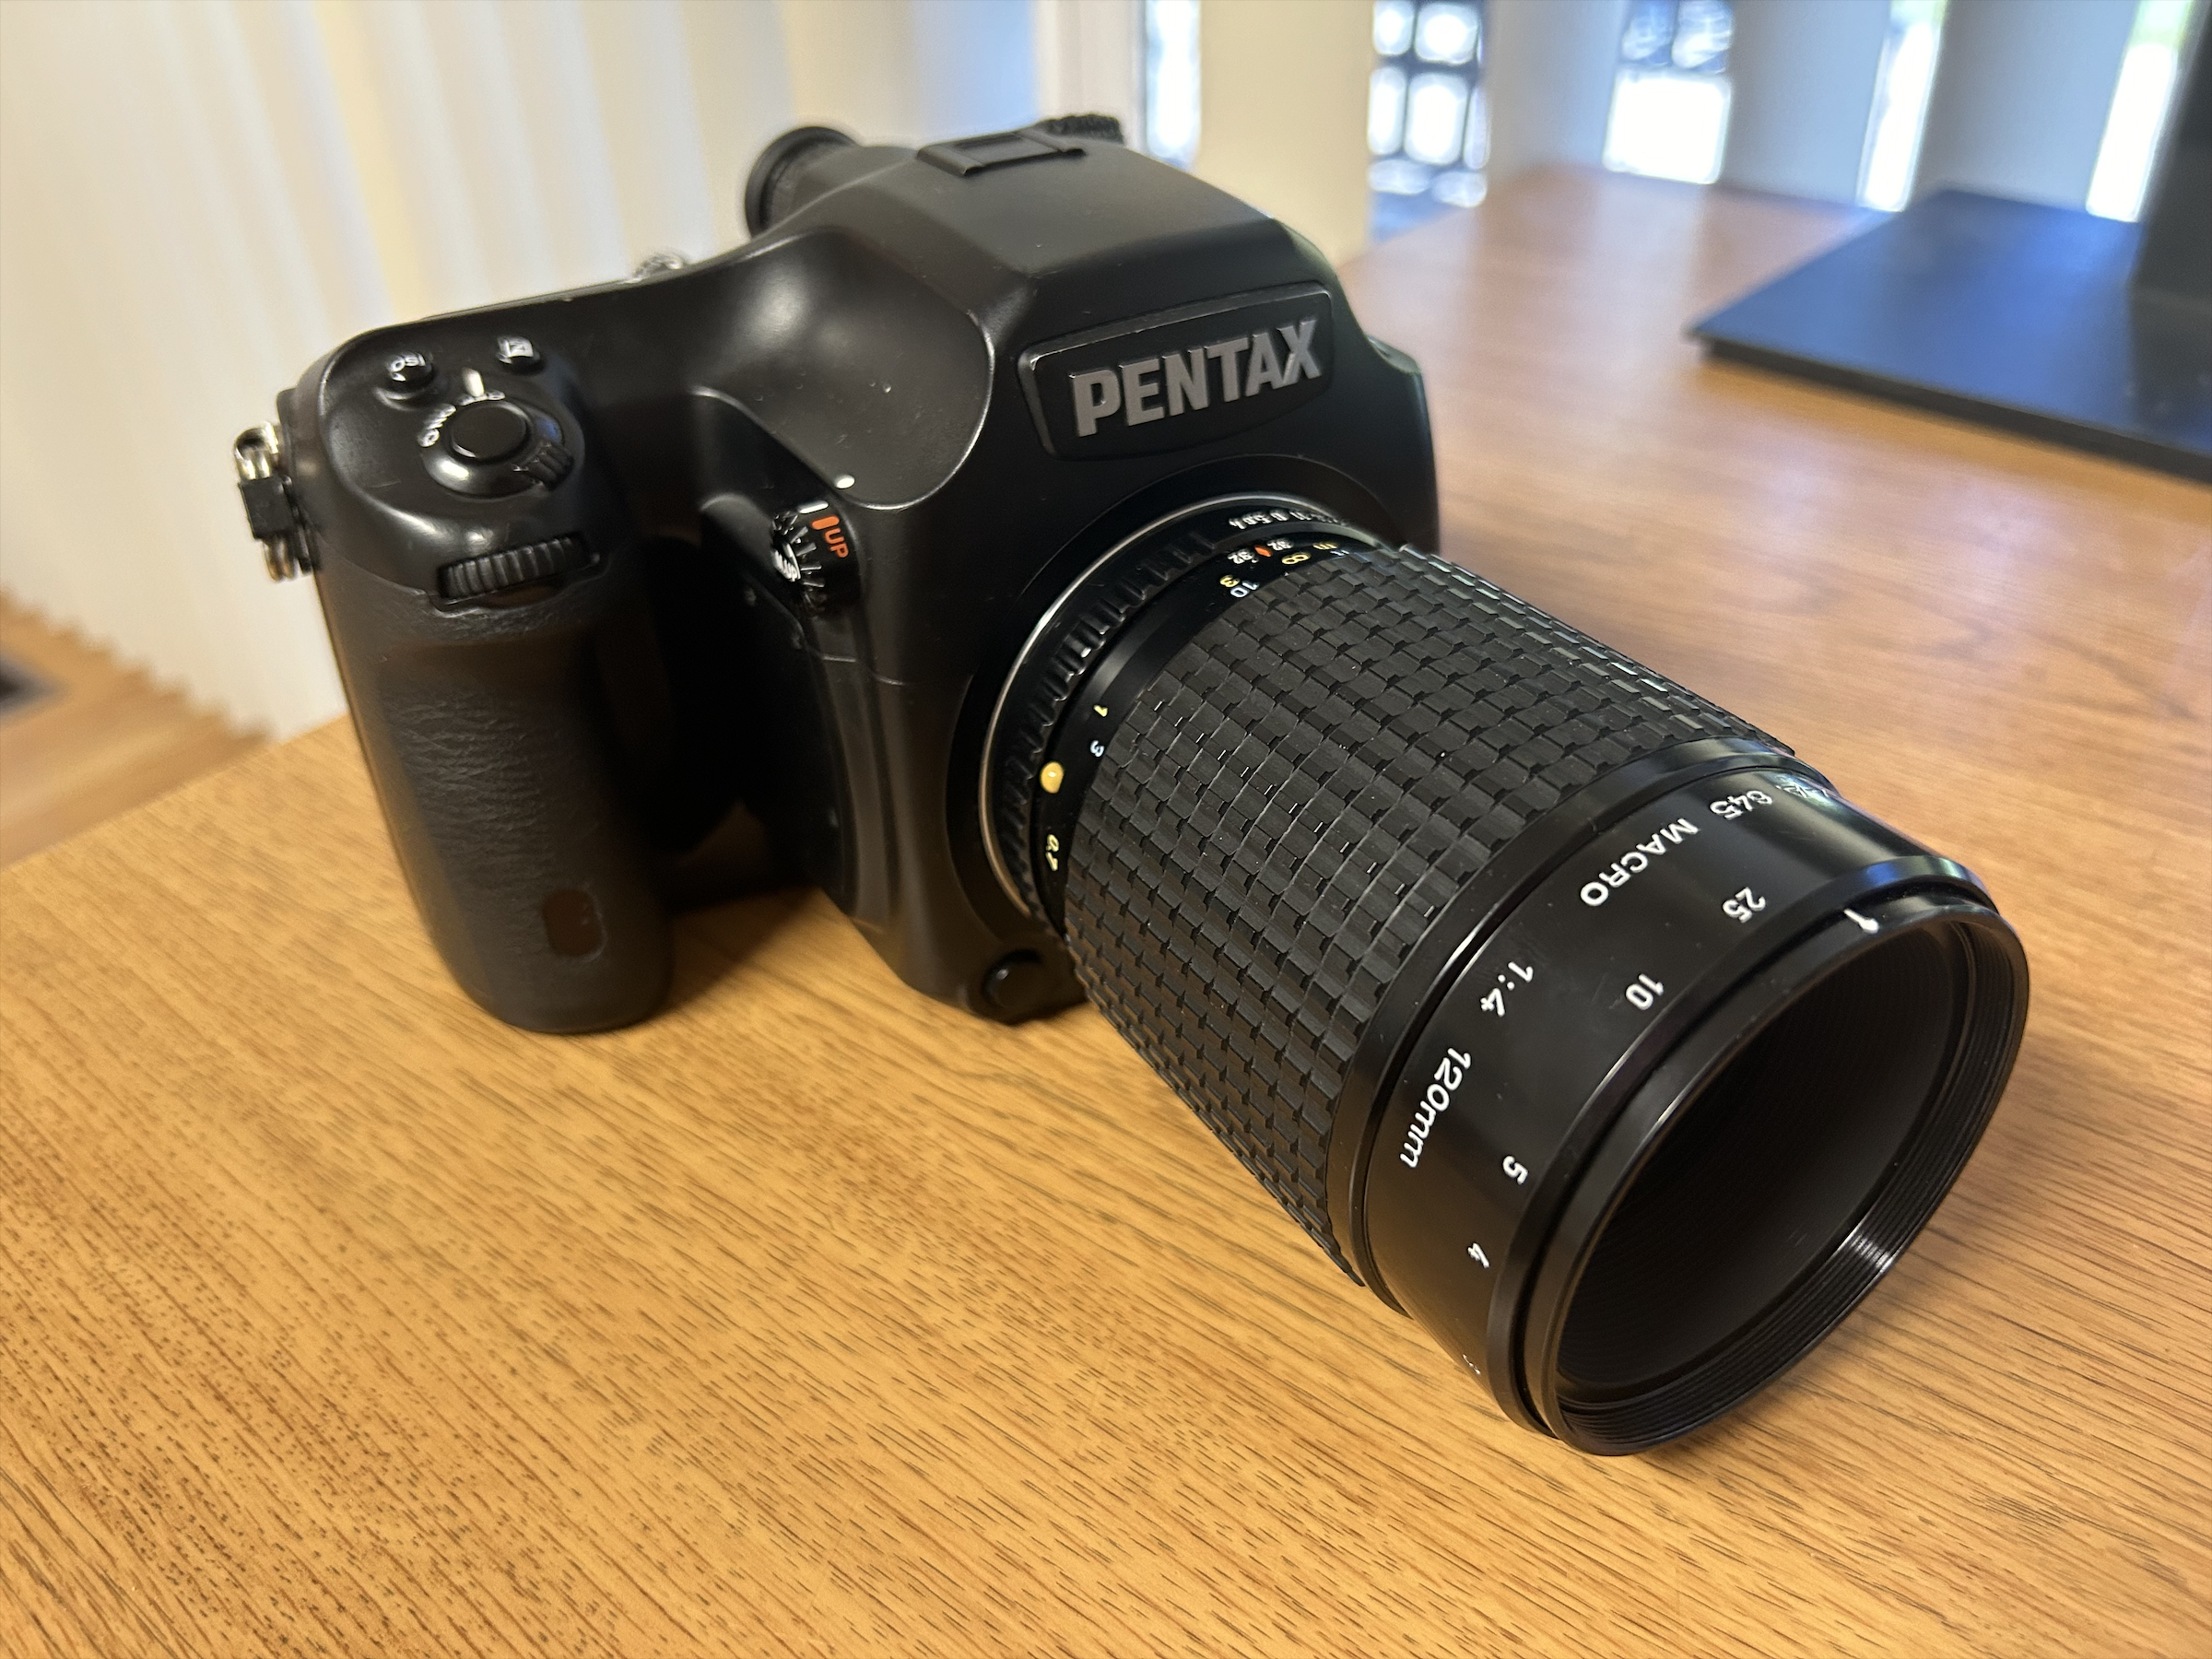 Pentax 645D with Pentax-A 120mm f/4 lens.